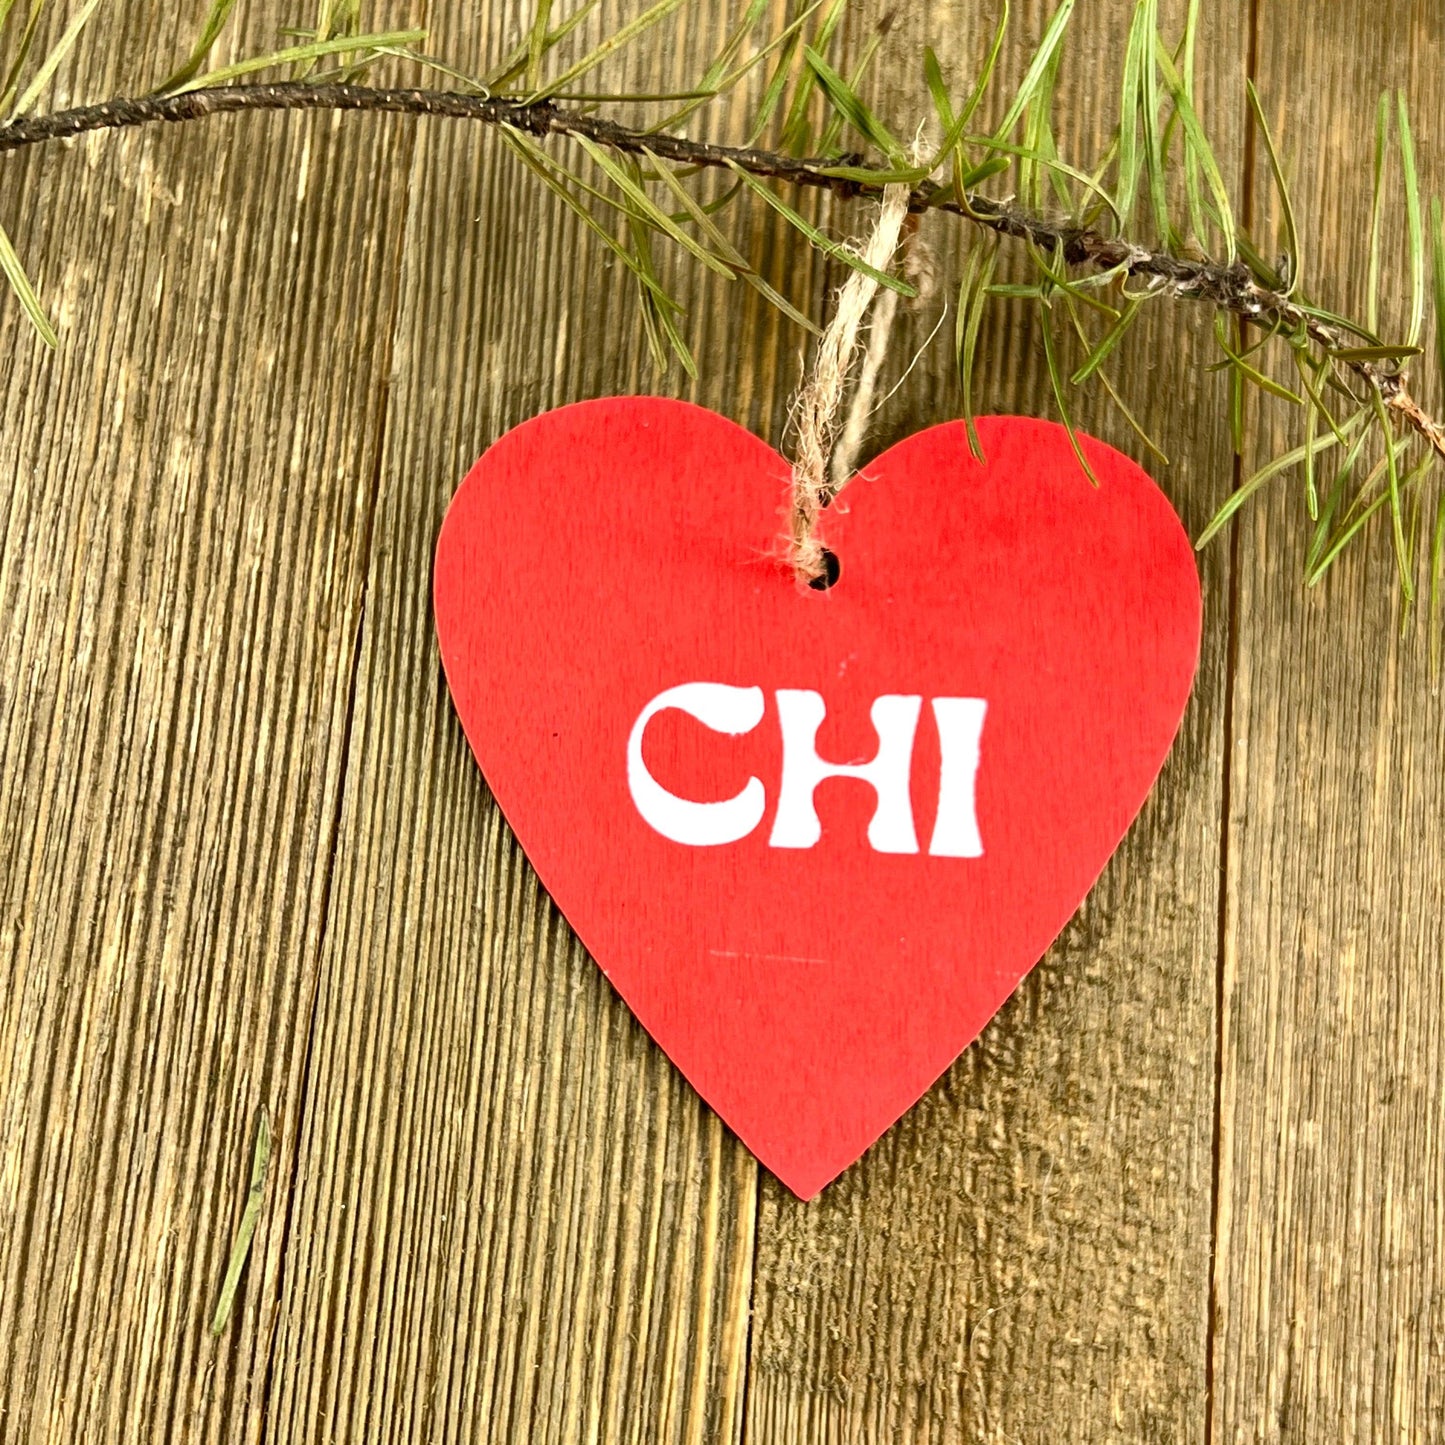 Chicago Chi Ornament